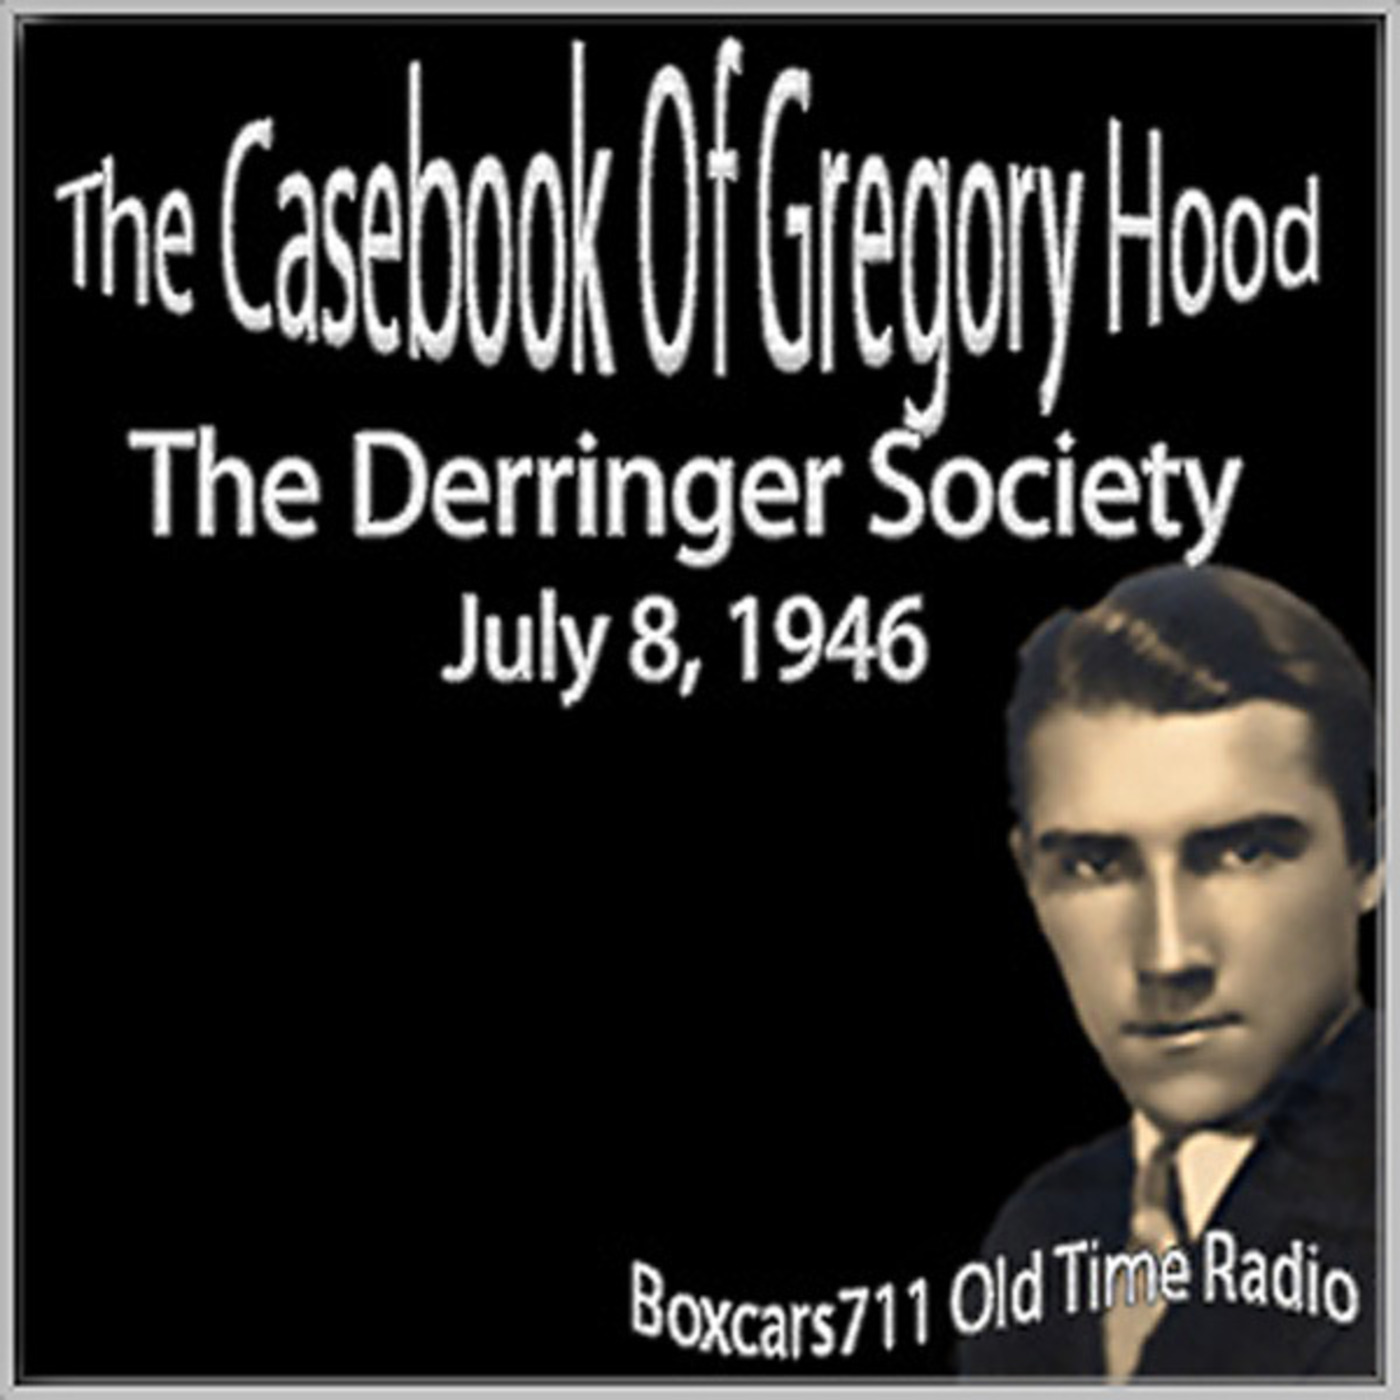 Episode 9610: Casebook Of Gregory Hood - 